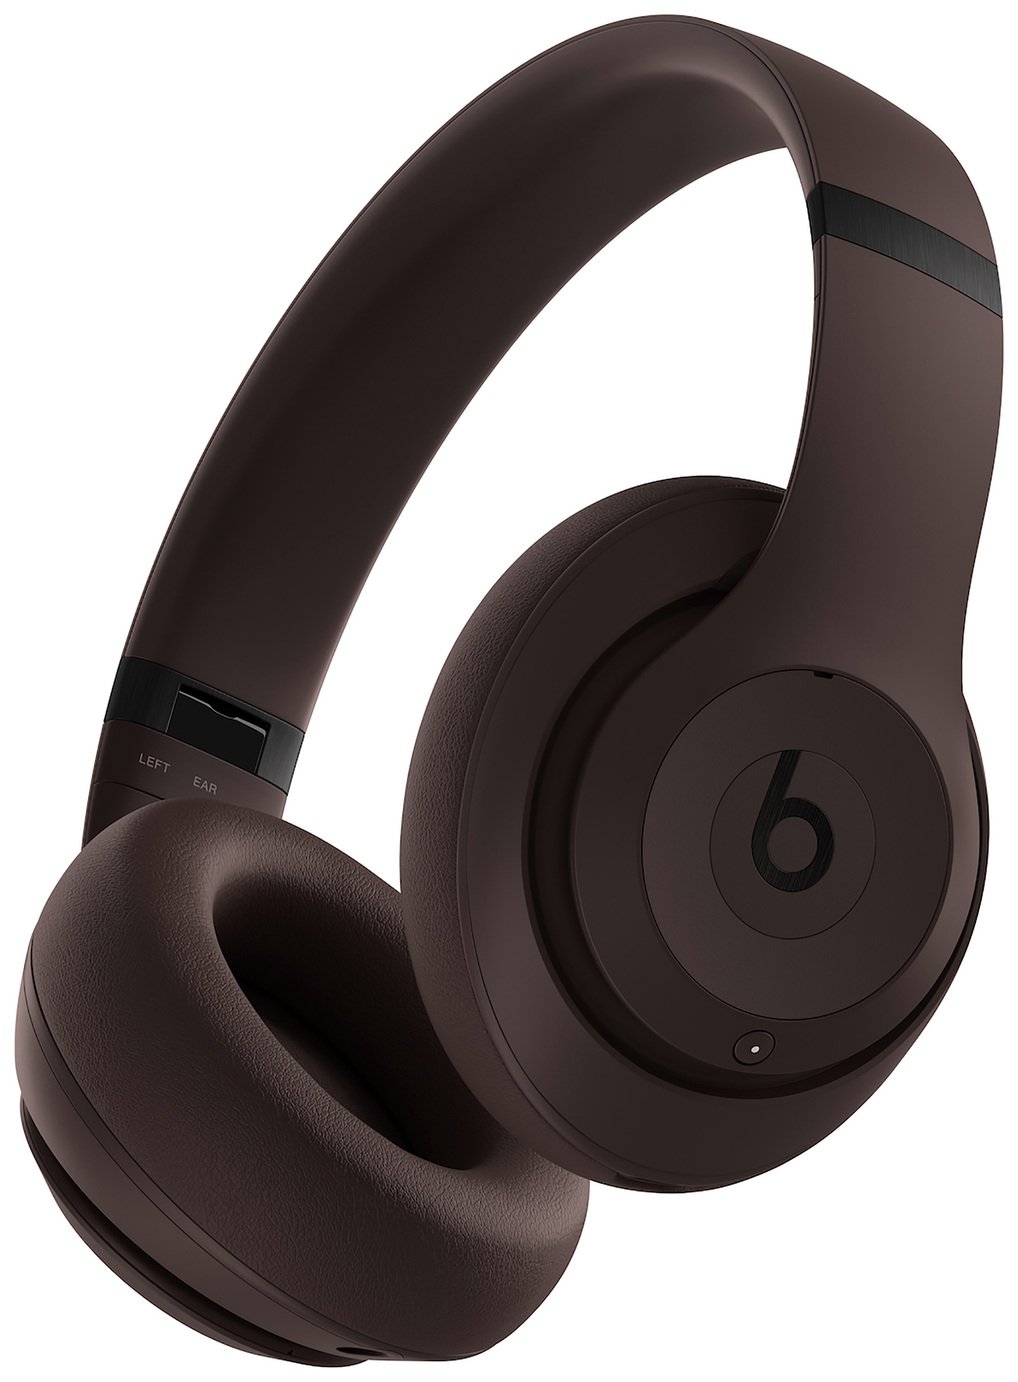 Beats Studio Pro ANC Over-Ear Wireless Headphones - Brown